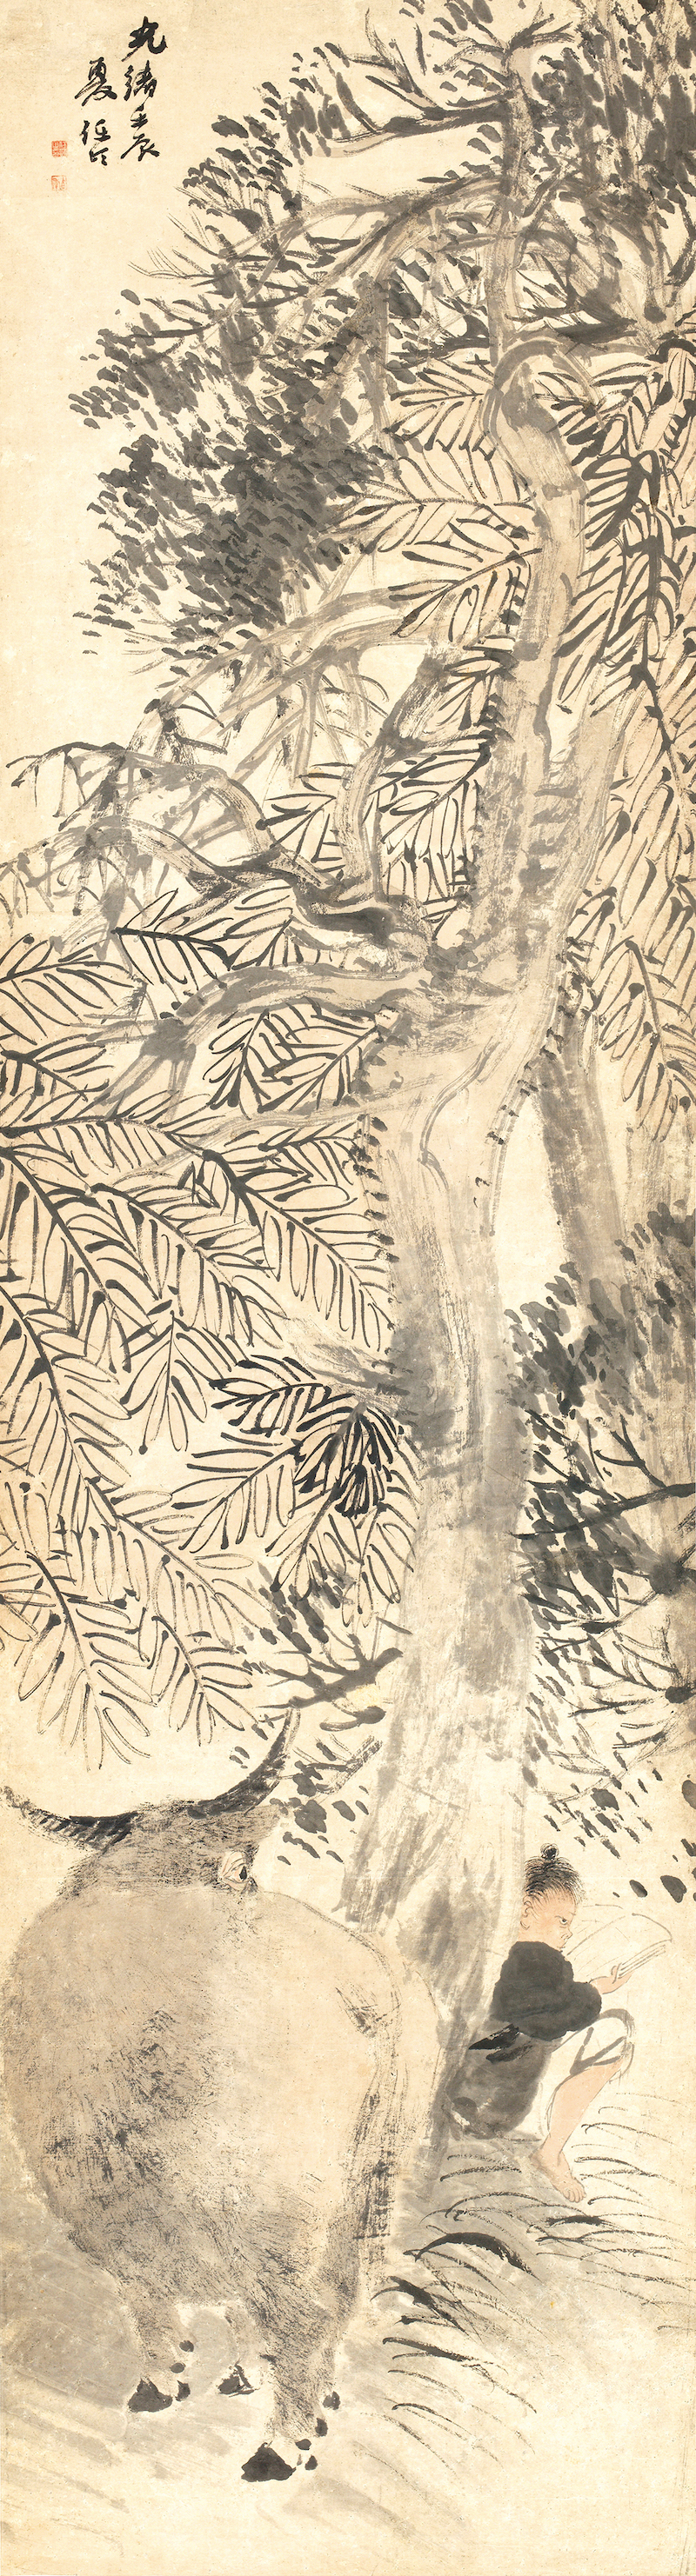 任伯年《牧童攻读图》轴 1892年 纸本设色 纵150厘米 横57厘米 中央美术学院美术馆藏